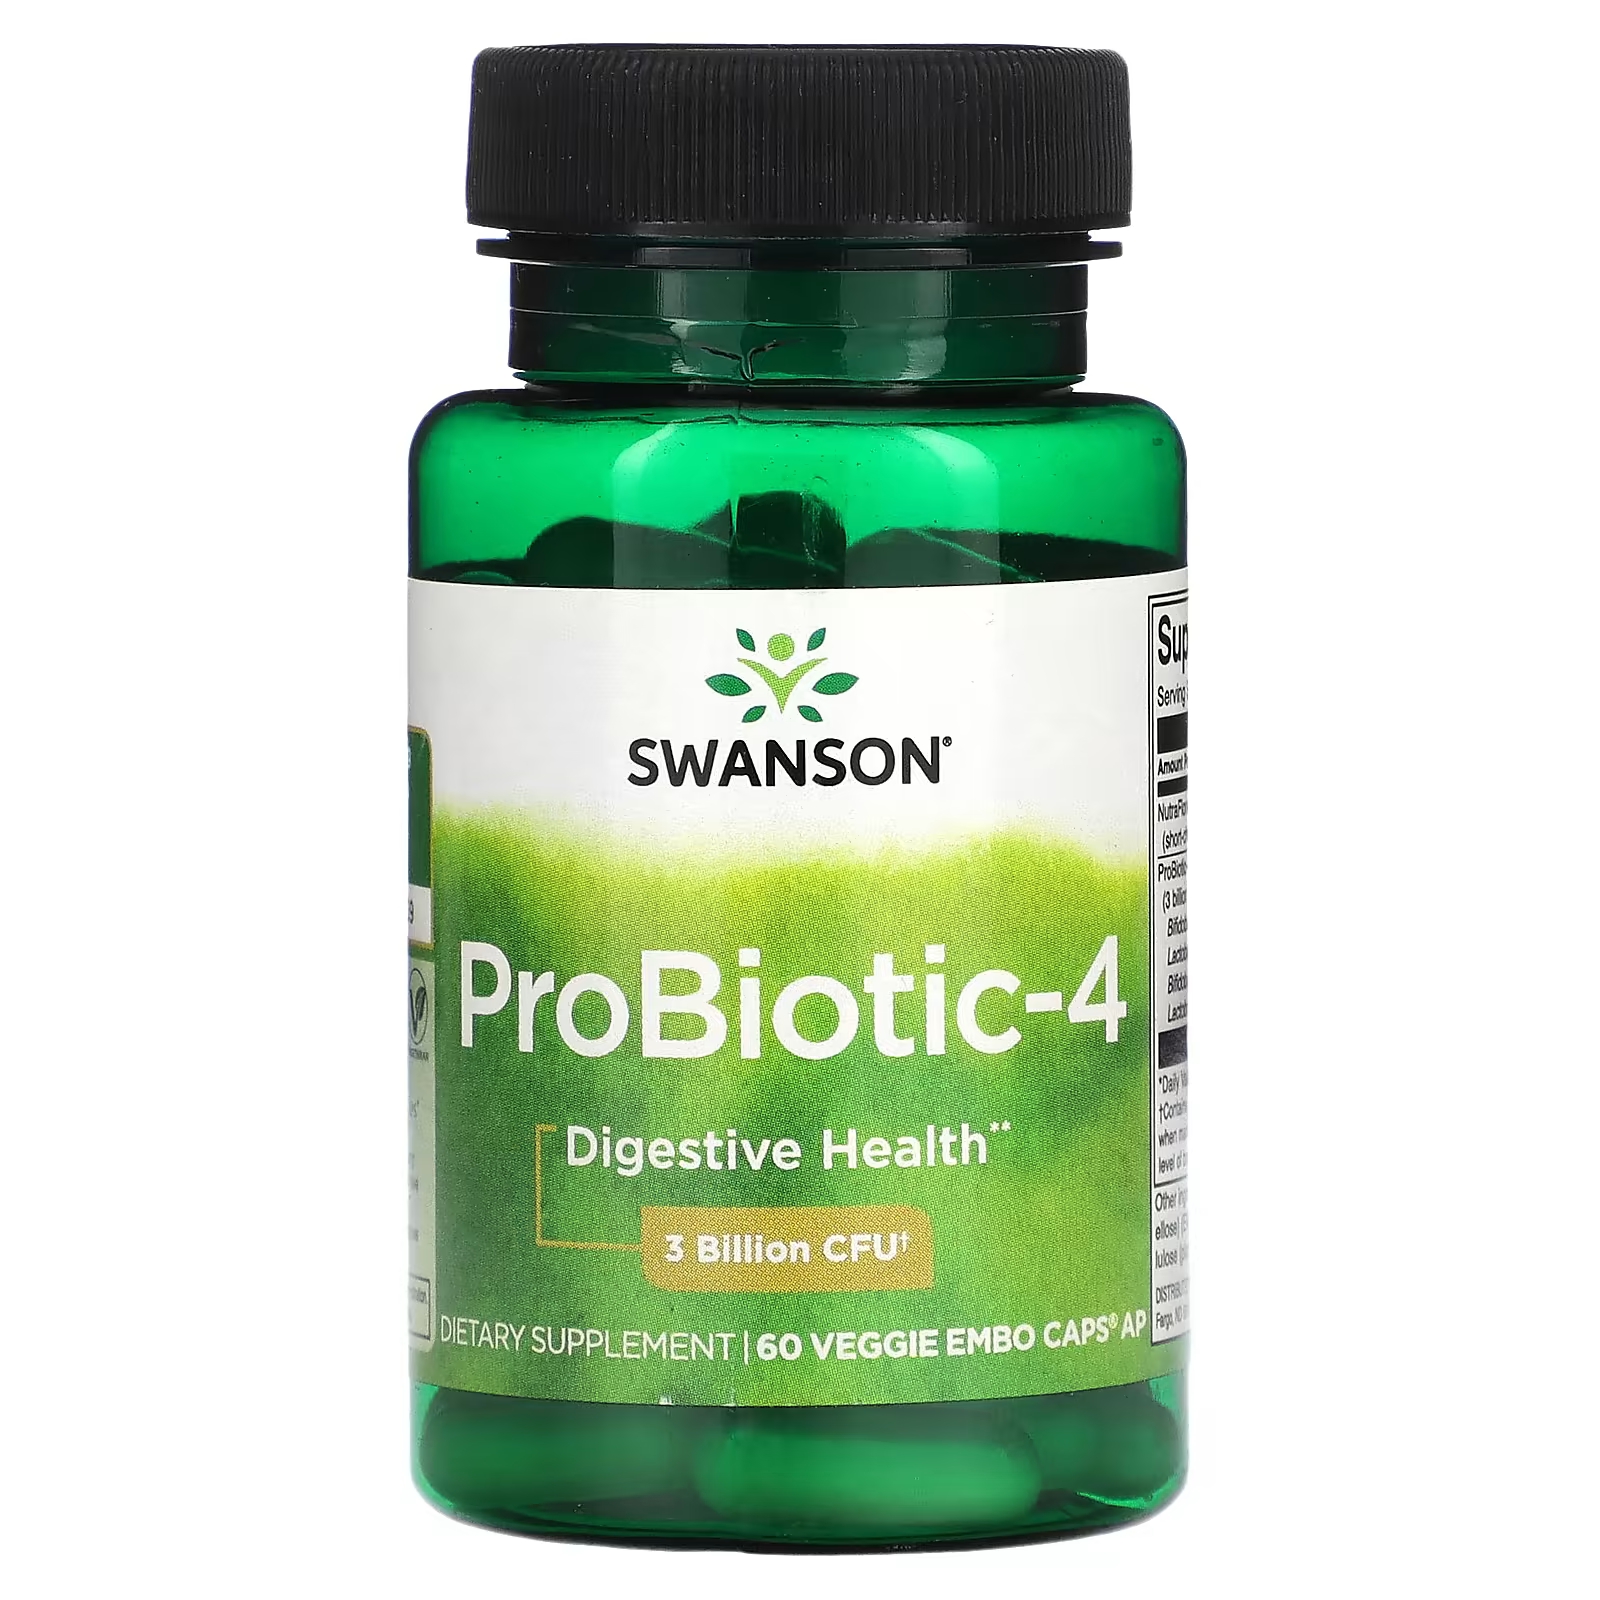 Пищевая добавка Swanson Probiotic 4.3 Billion CFU, 60 капсул пищевая добавка swanson l plantarum probiotic 30 капсул